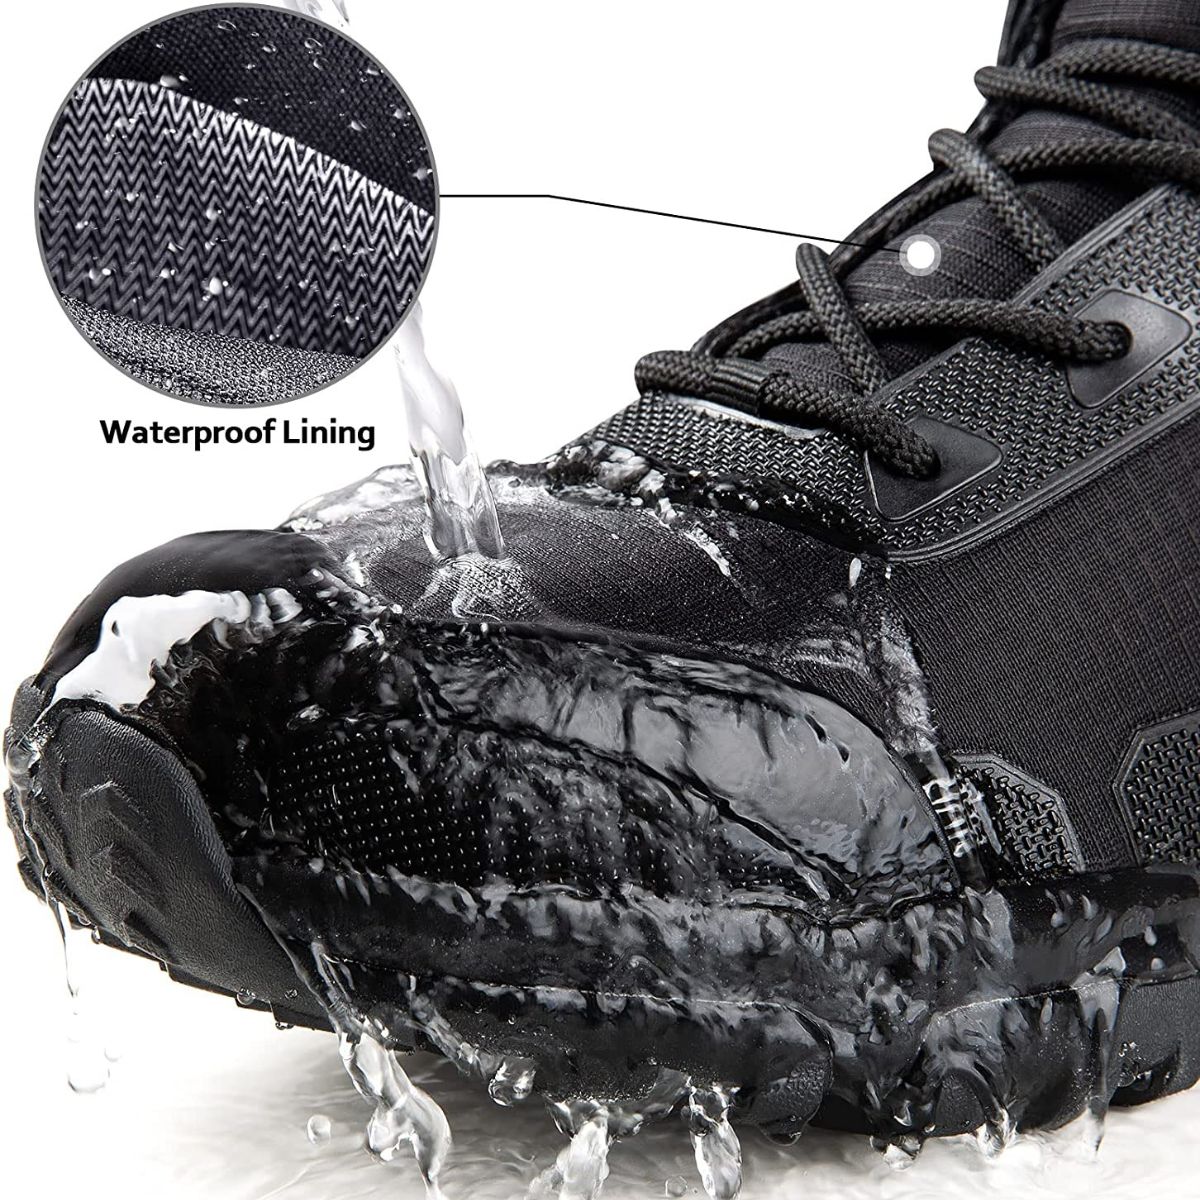 Lightweight WaterProof Mountain Boots